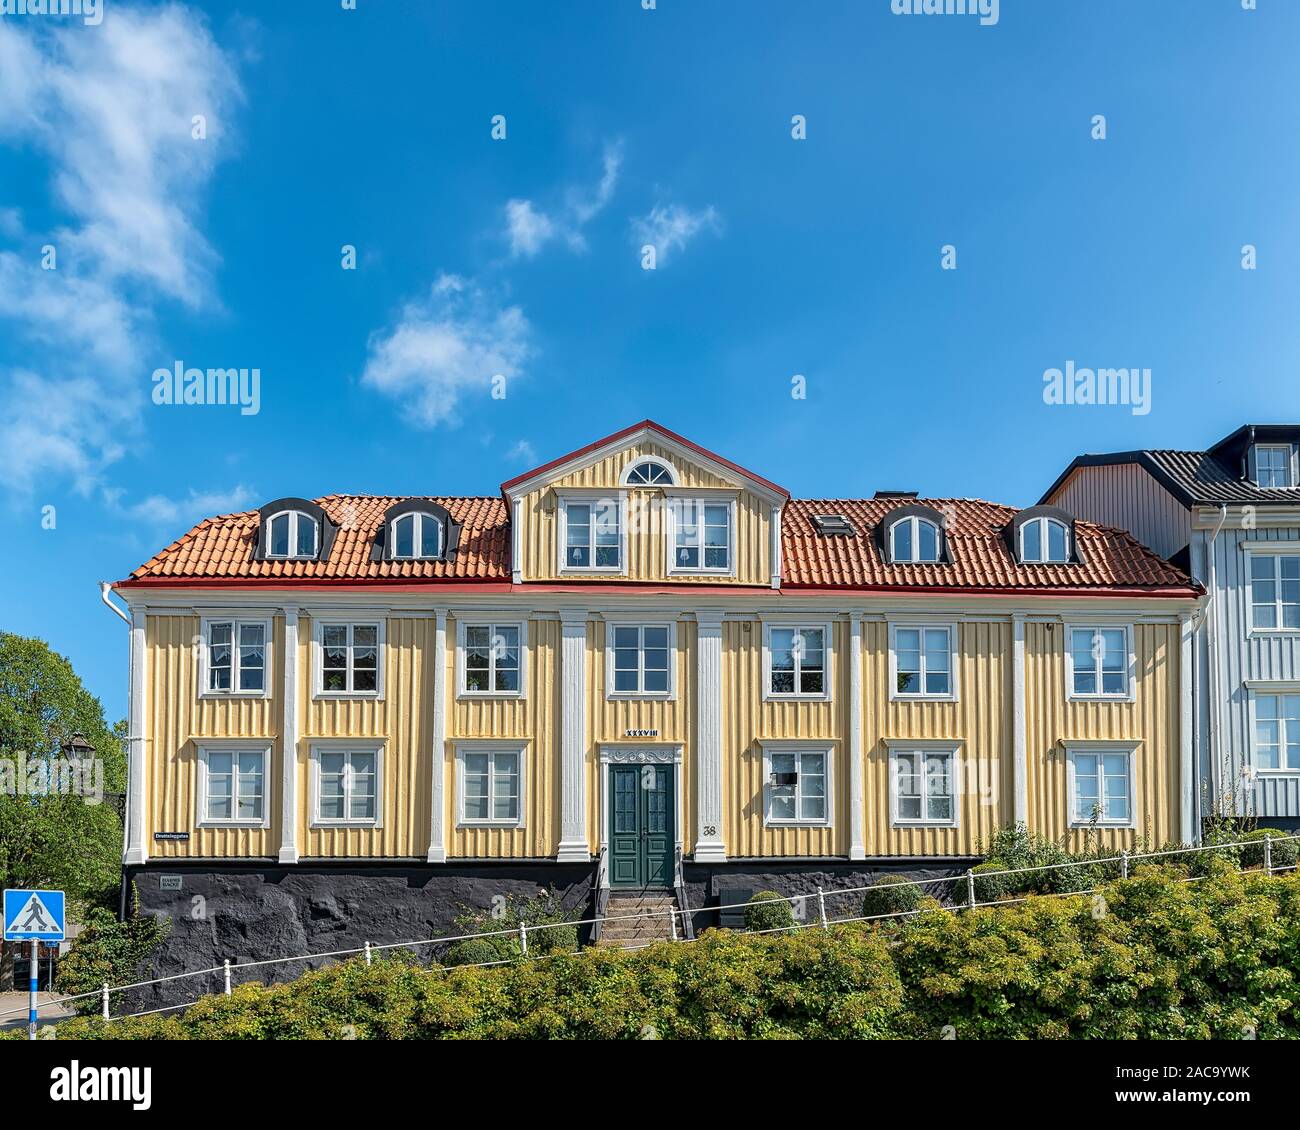 KARLSHAMN, SCHWEDEN - August 24, 2019: Ein typischer Holz- Stadthaus aus dem Schwedischen Karlshamn. Stockfoto